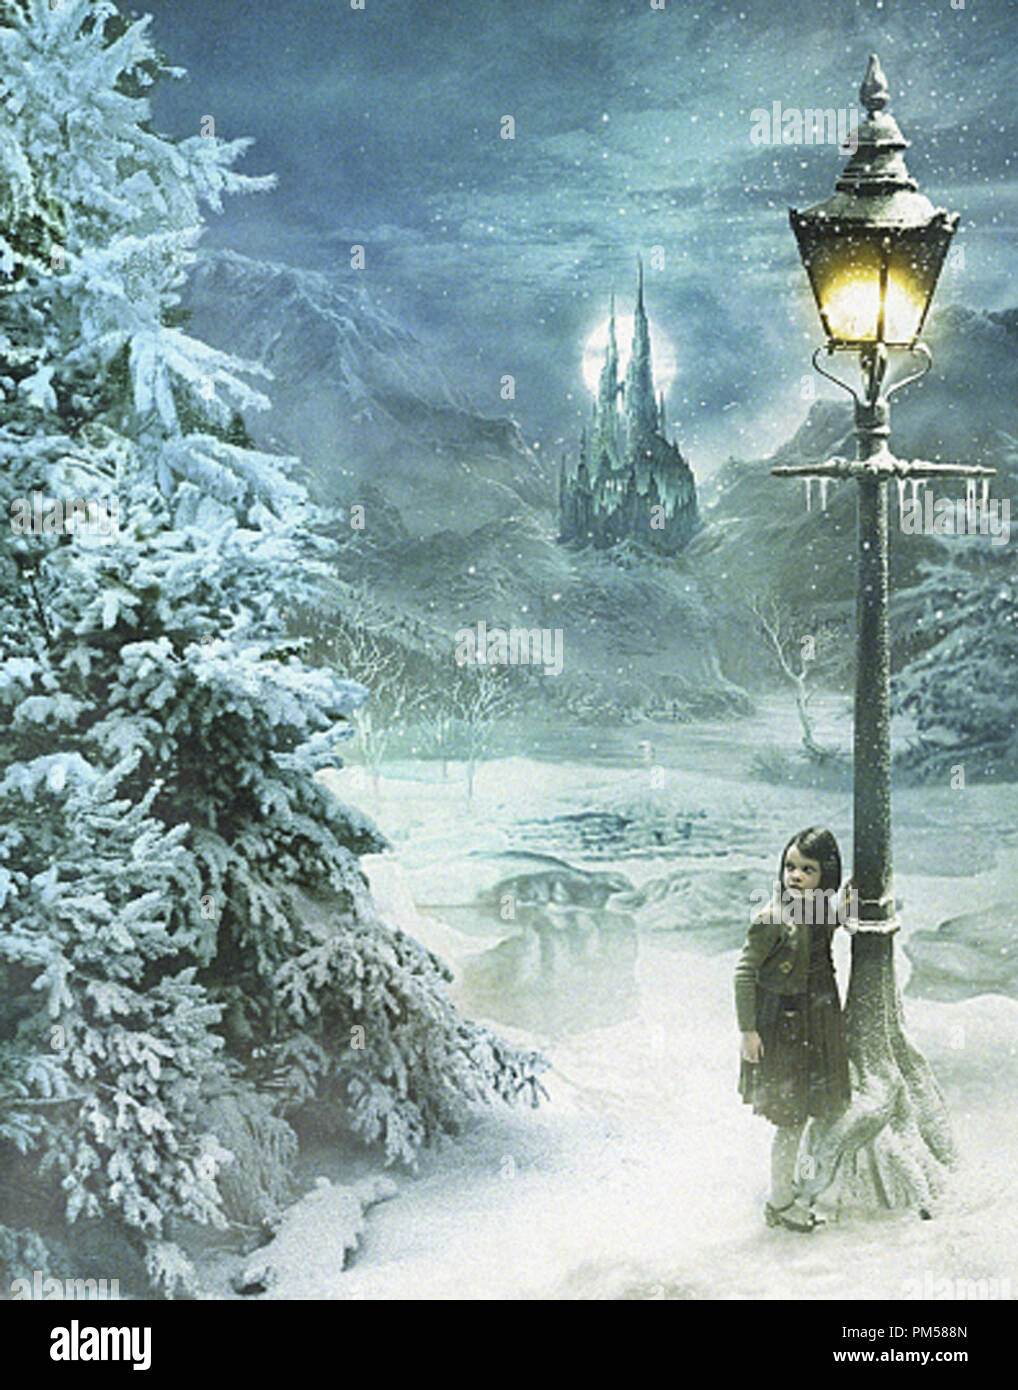 Studio Werbung immer noch von "Die Chroniken von Narnia: Der König von Narnia" Georgie Henley © 2005 Walt Disney Pictures Datei Referenz # 307361566 THA nur für redaktionelle Verwendung - Alle Rechte vorbehalten Stockfoto